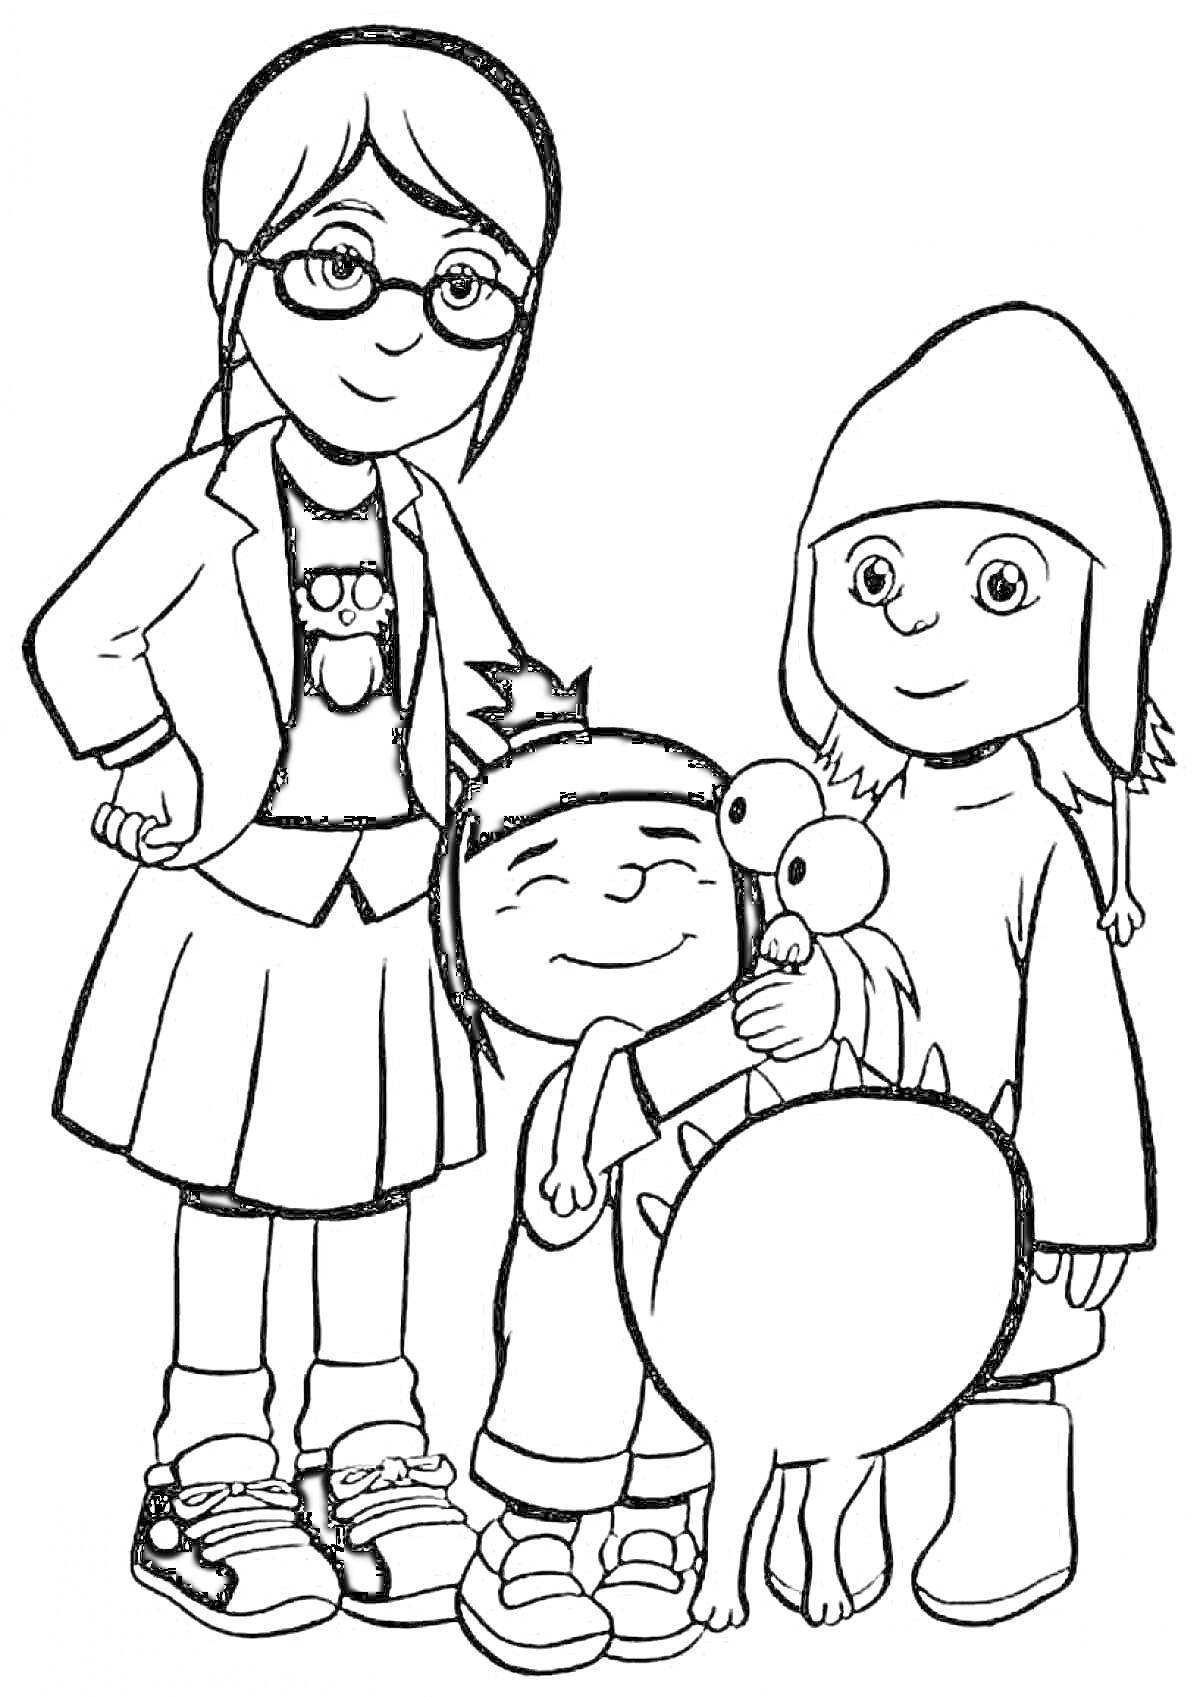 Три девочки в очках, кофте и юбке, зимней шапке и свитере с монстром на руках